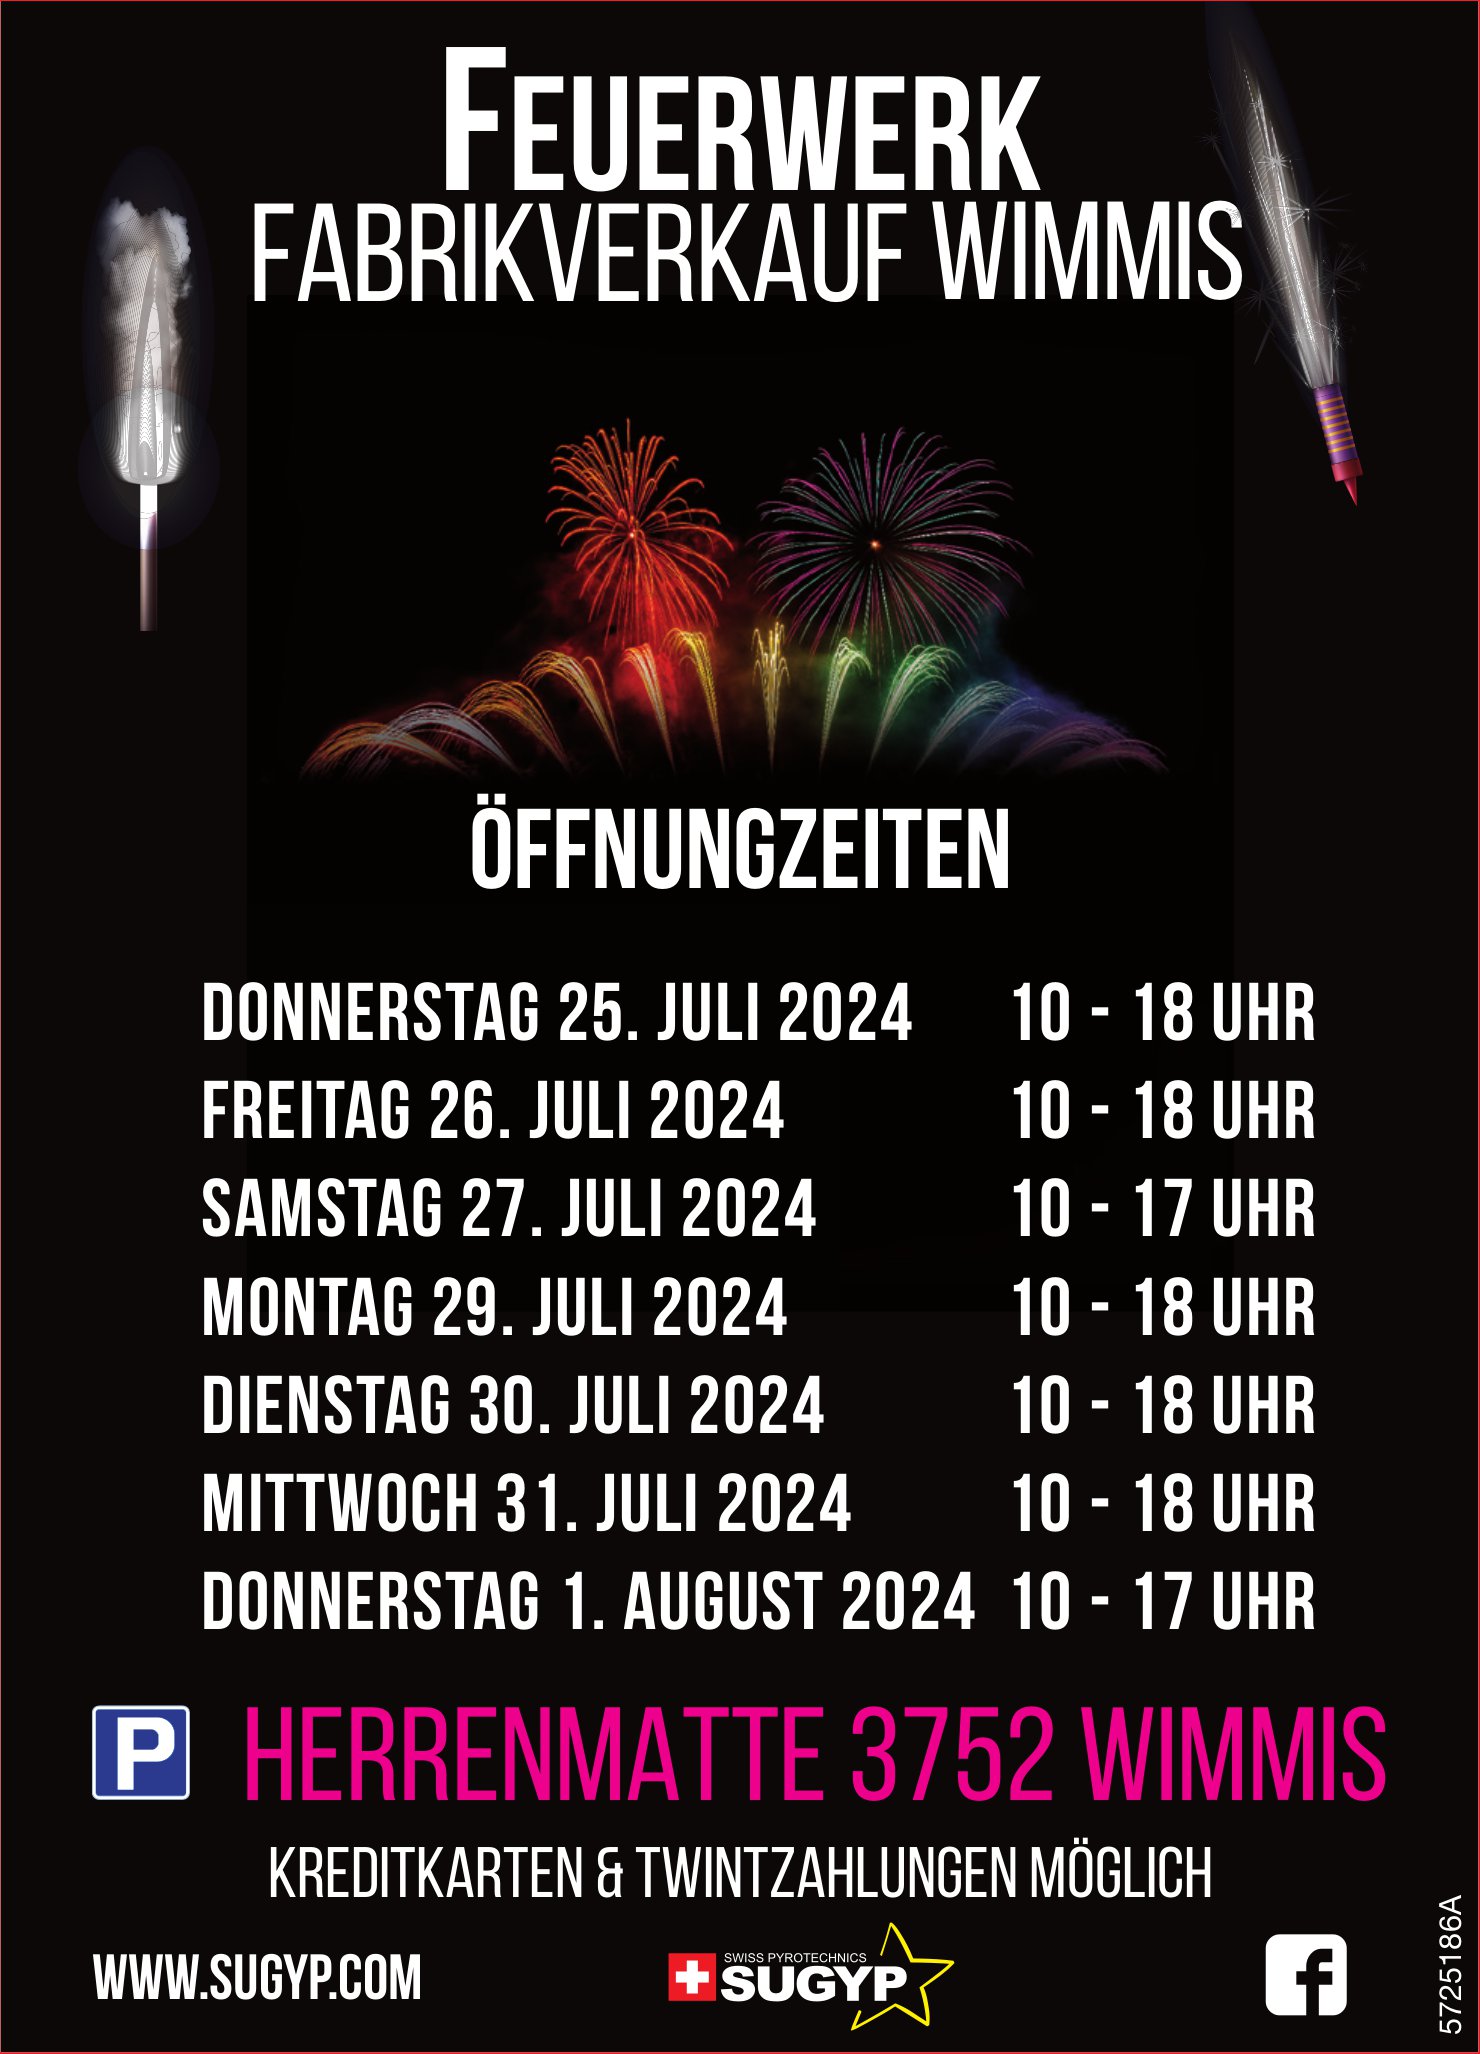 Öffnungzeiten Feuerwerk, 1. August, Fabrikverkauf Wimmis